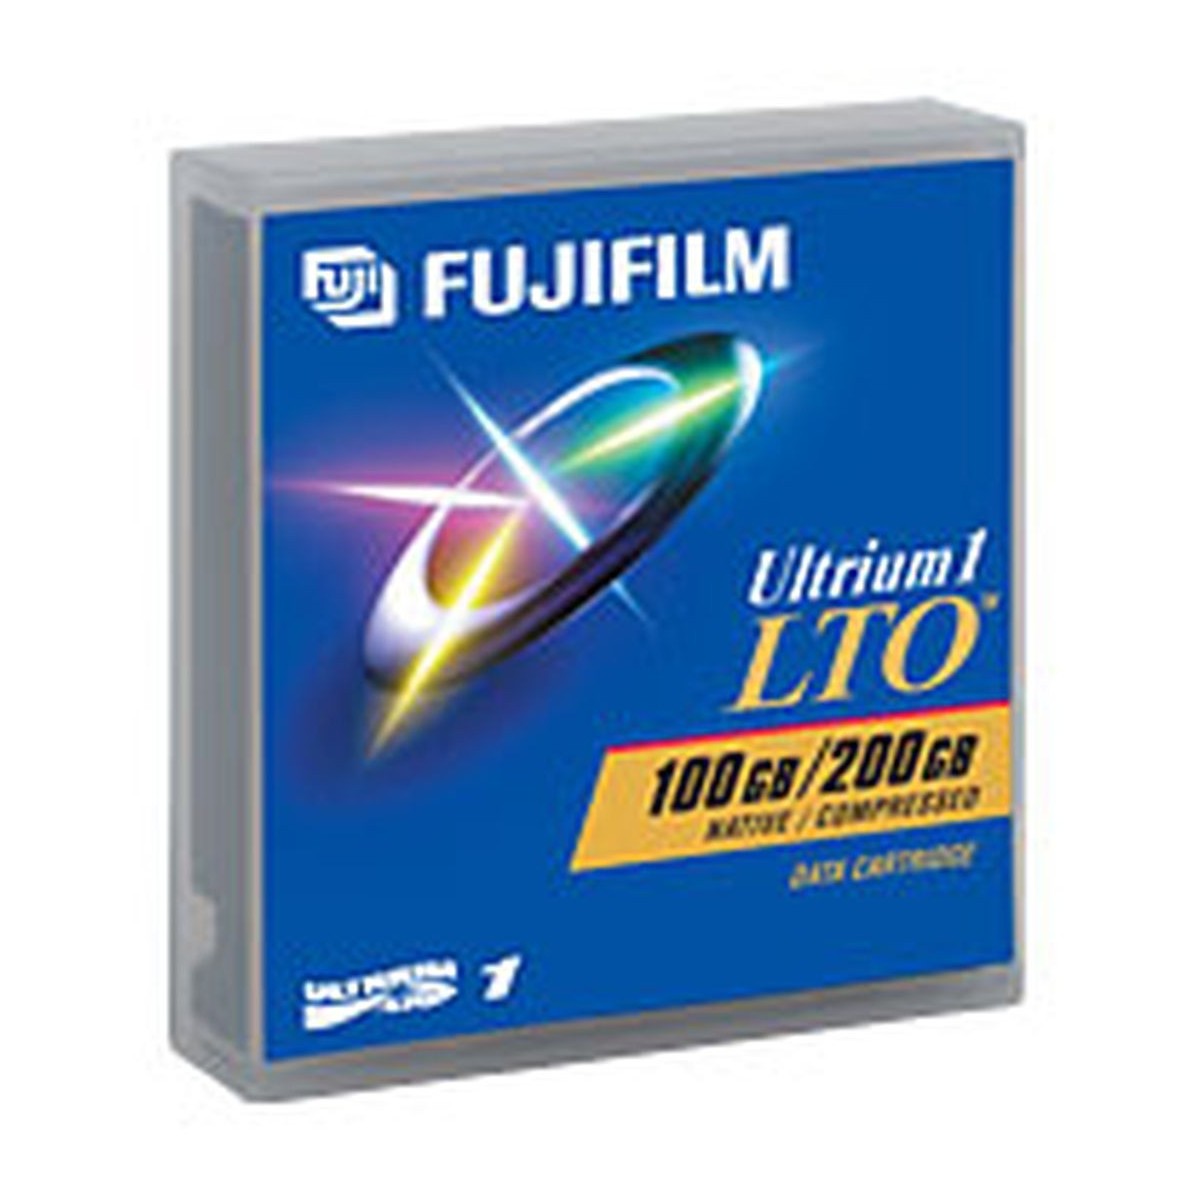 NOWA TASMA FUJIFILM LTO ULTRIUM-1 100GB/200GB